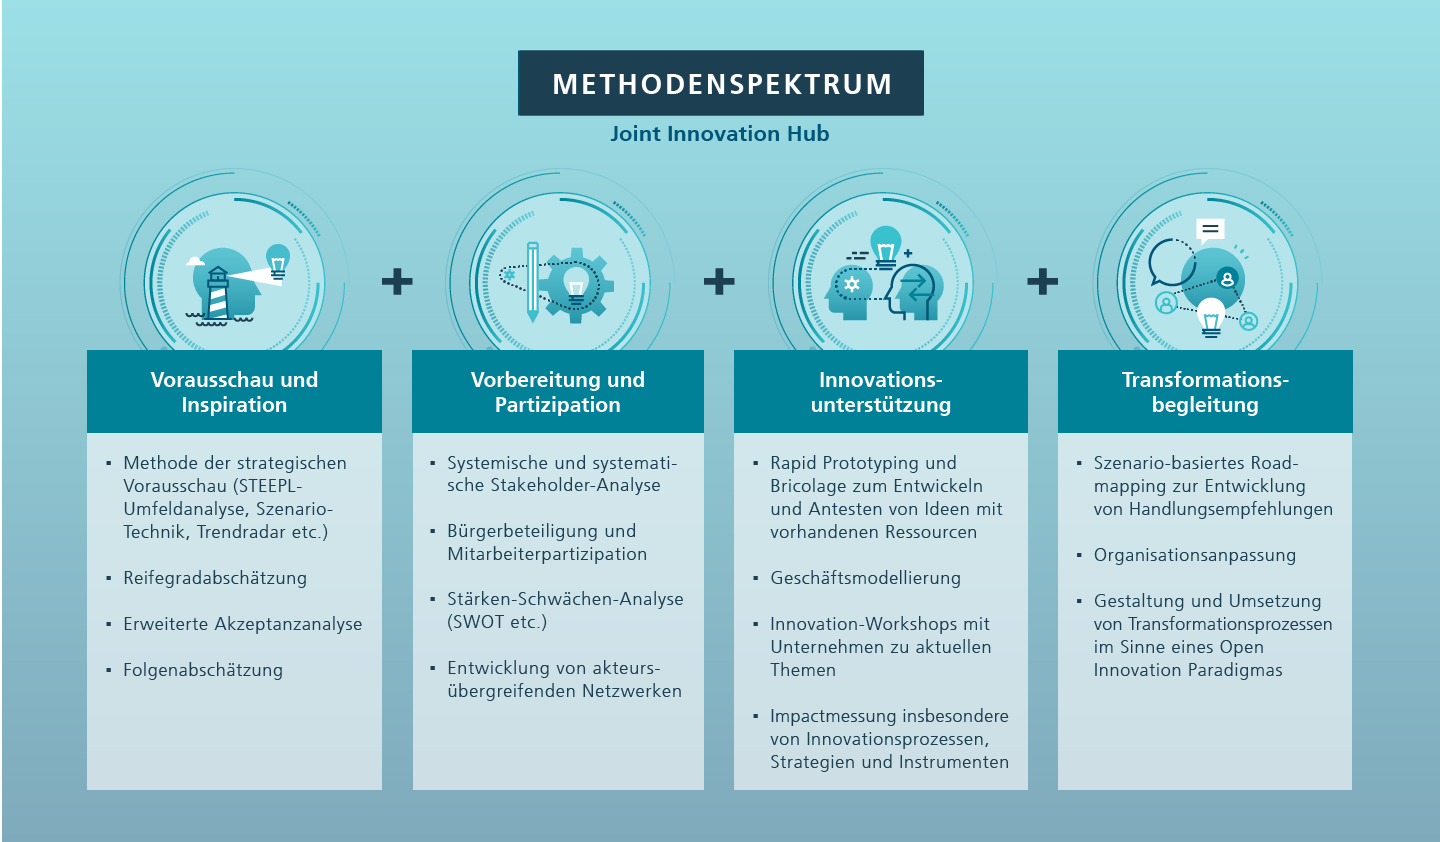 Abbildung 2: Methodenspektrum des JIH-Heilbronns entlang des gesamten Innovationsprozesses in den Bereichen Innovation, Digitalisierung und KI sowie Nachhaltigkeit